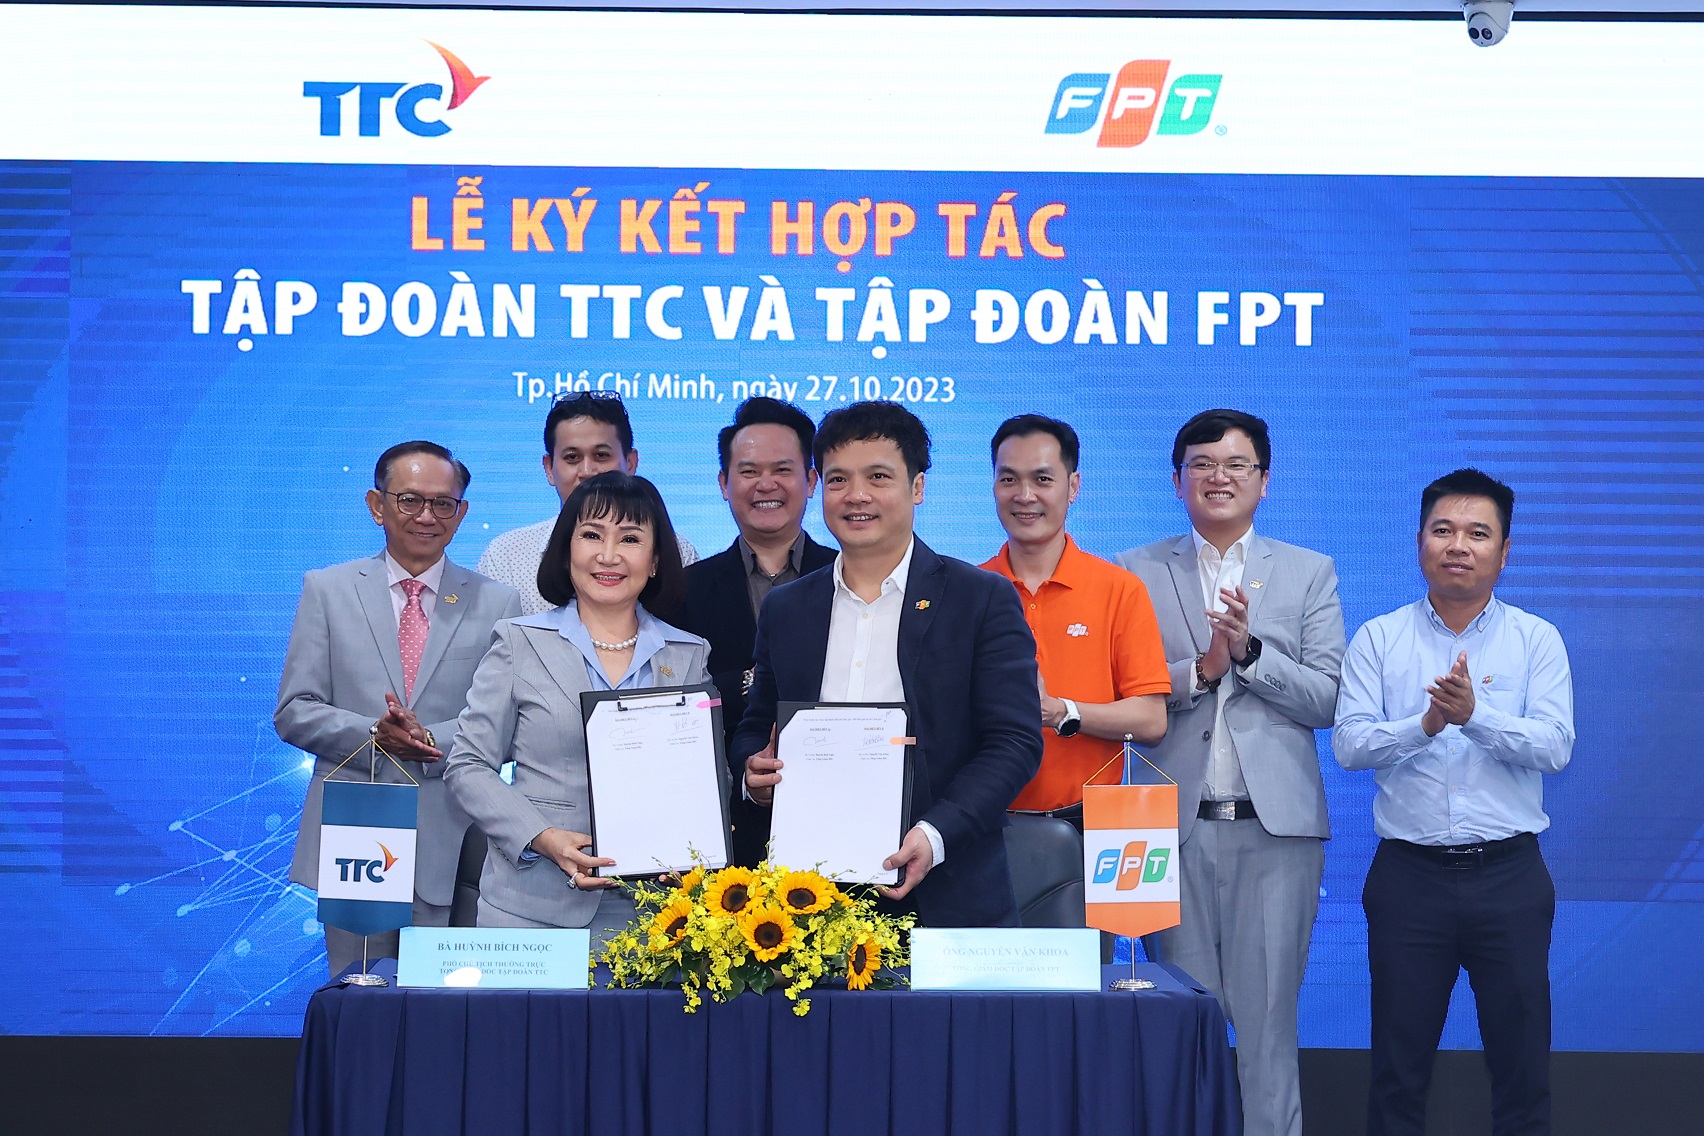 Tập đoàn TTC và Tập đoàn FPT bắt tay hợp tác, mở ra cơ hội kinh doanh mới - Ảnh 2.